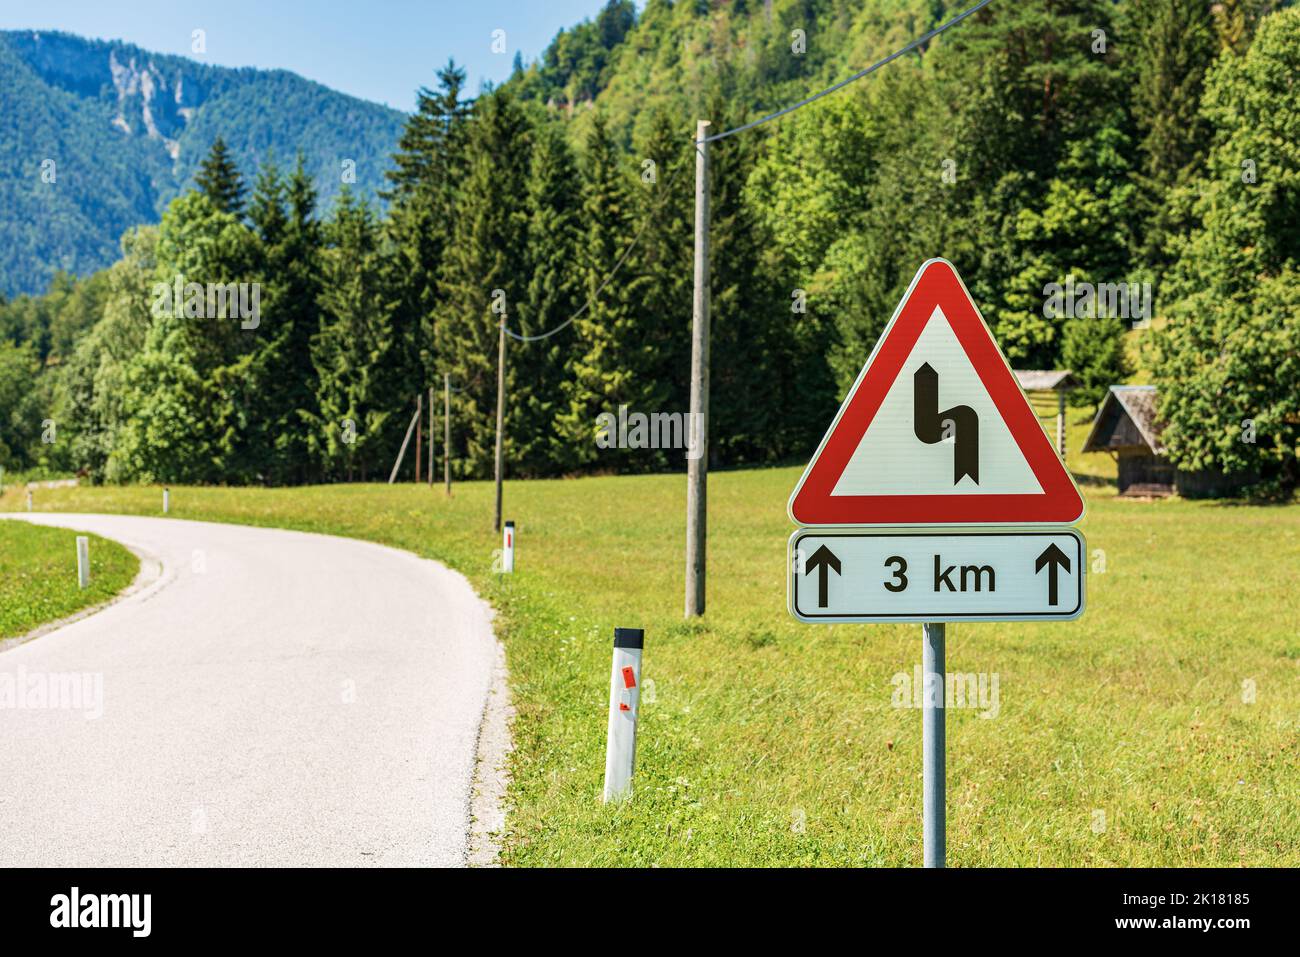 Segnaletica stradale triangolare bianca e rossa di strade tortuose che precedono, strada di montagna con serie di curve pericolose per tre chilometri. Slovenia, Europa. Foto Stock